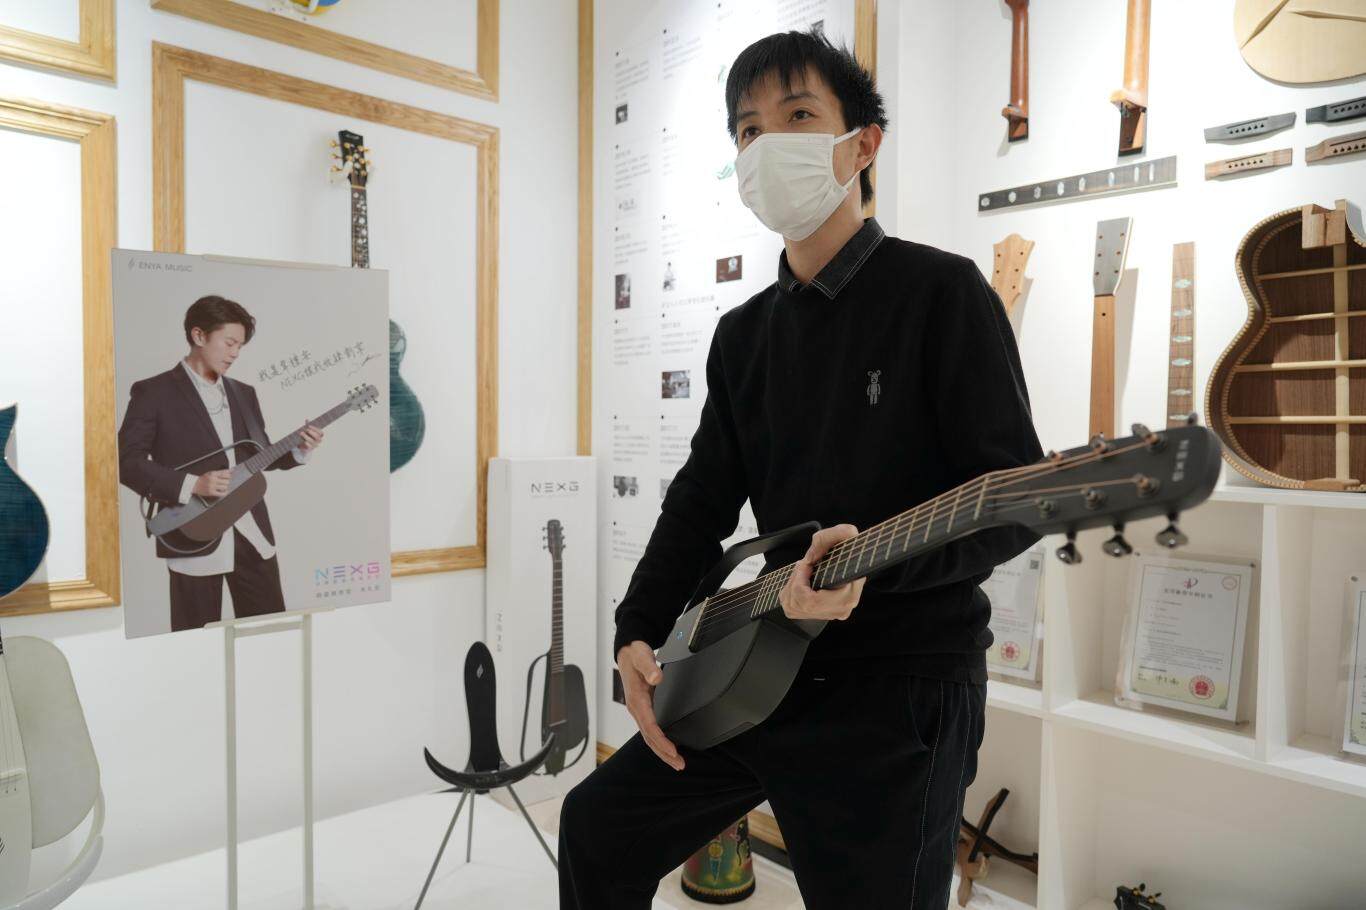 恩雅乐器推出的全球首把超便携碳纤维智能吉他NEXG。